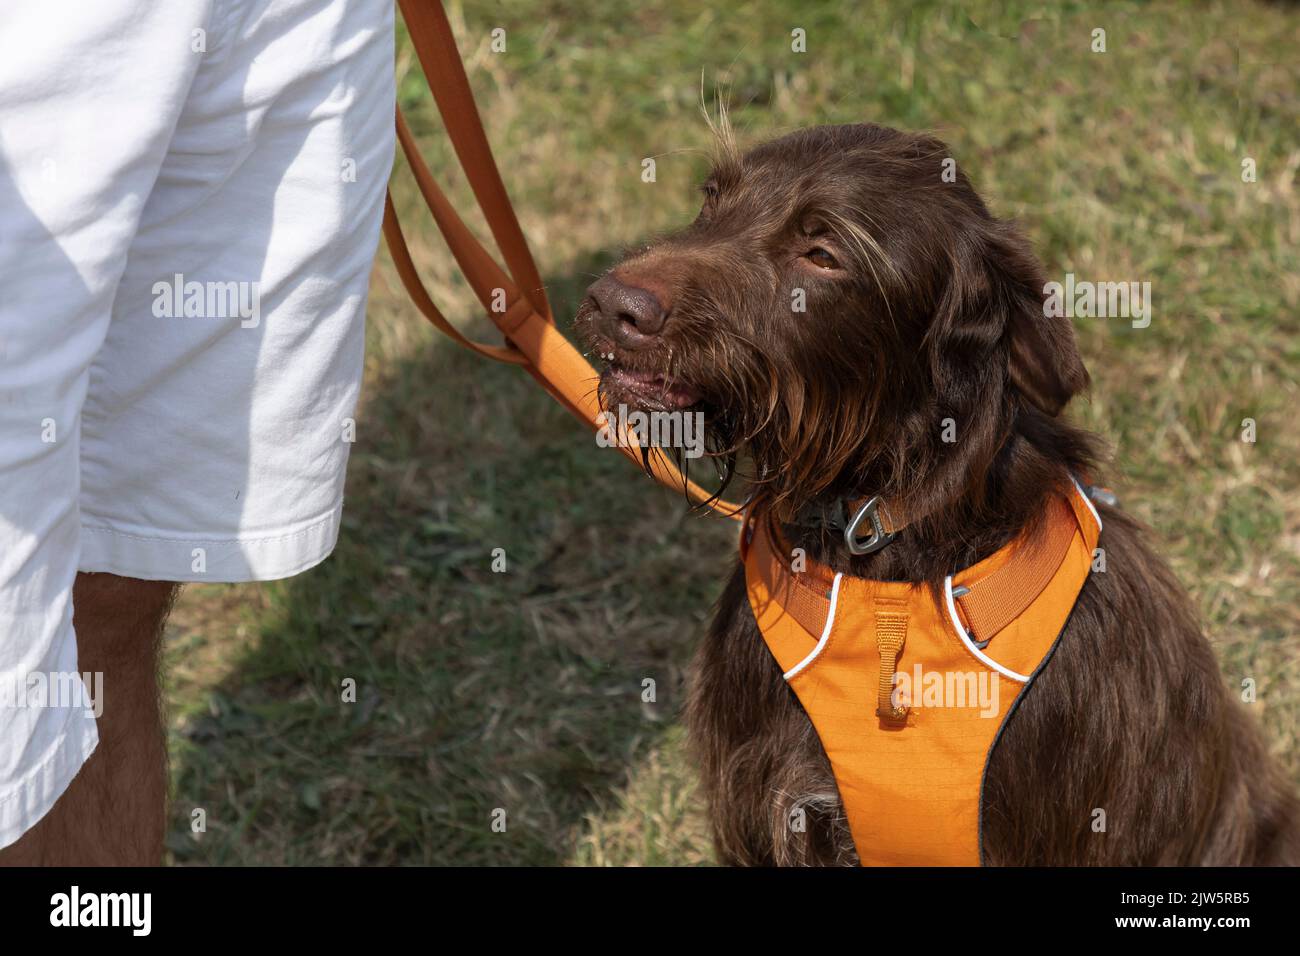 Cane marrone peloso che indossa un'imbracatura arancione e che siede sull'erba accanto a una persona in pantaloncini bianchi Foto Stock